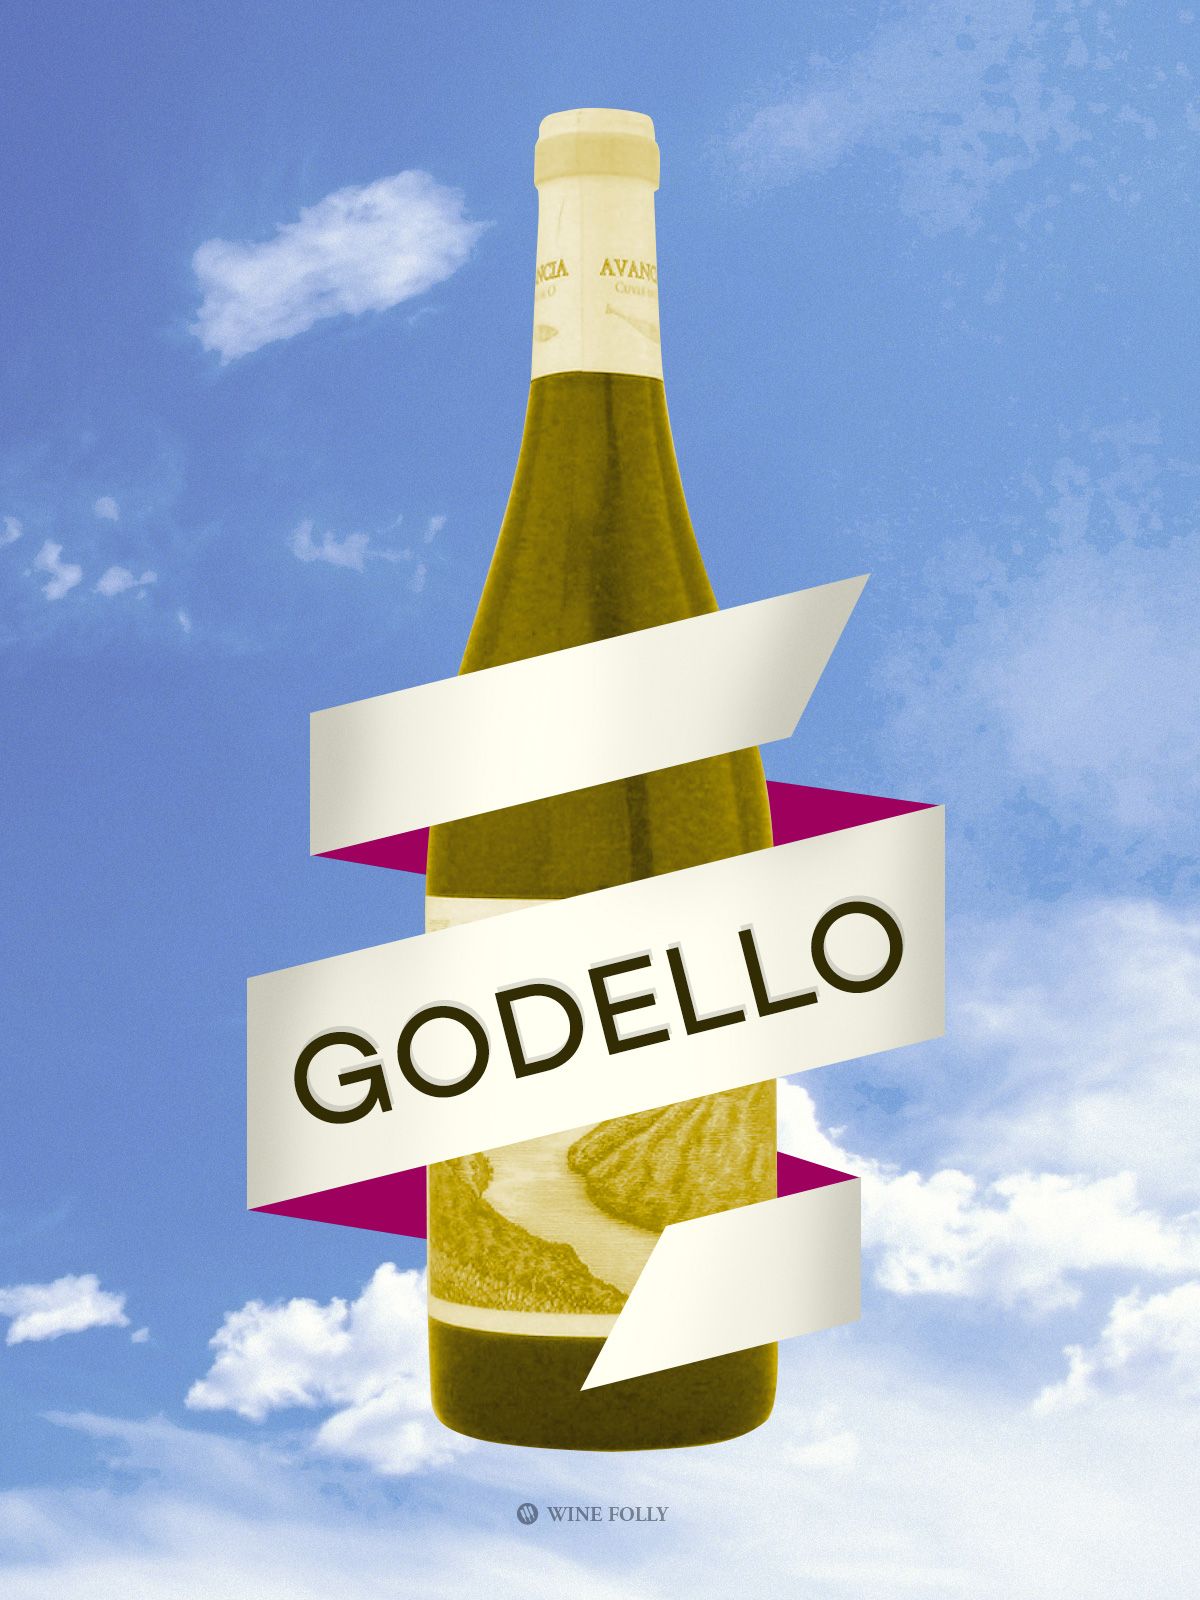 Godello Illustrasjon av Wine Folly